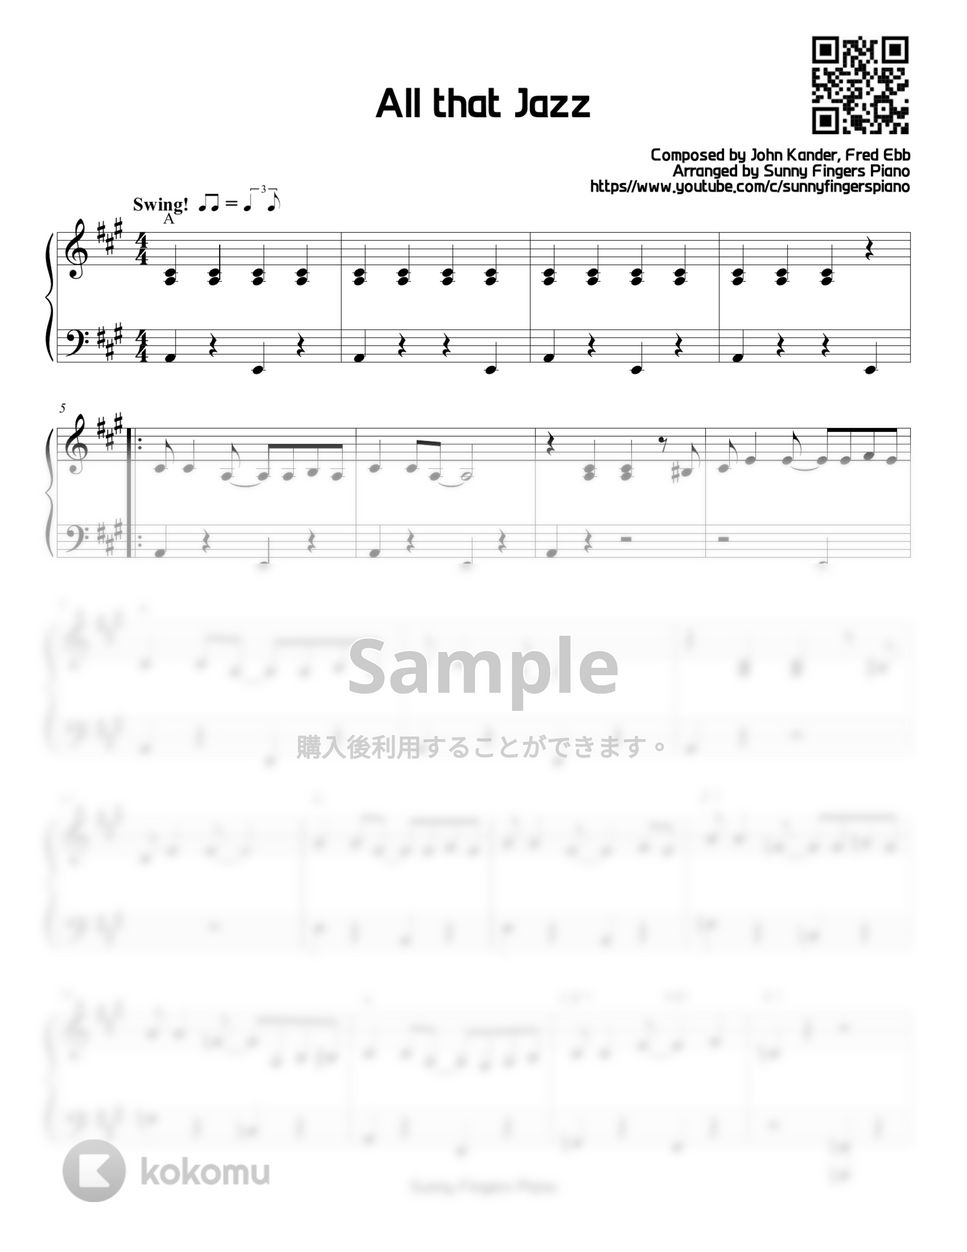 シカゴ - All that jazz (EASY) by Sunny Fingers Piano